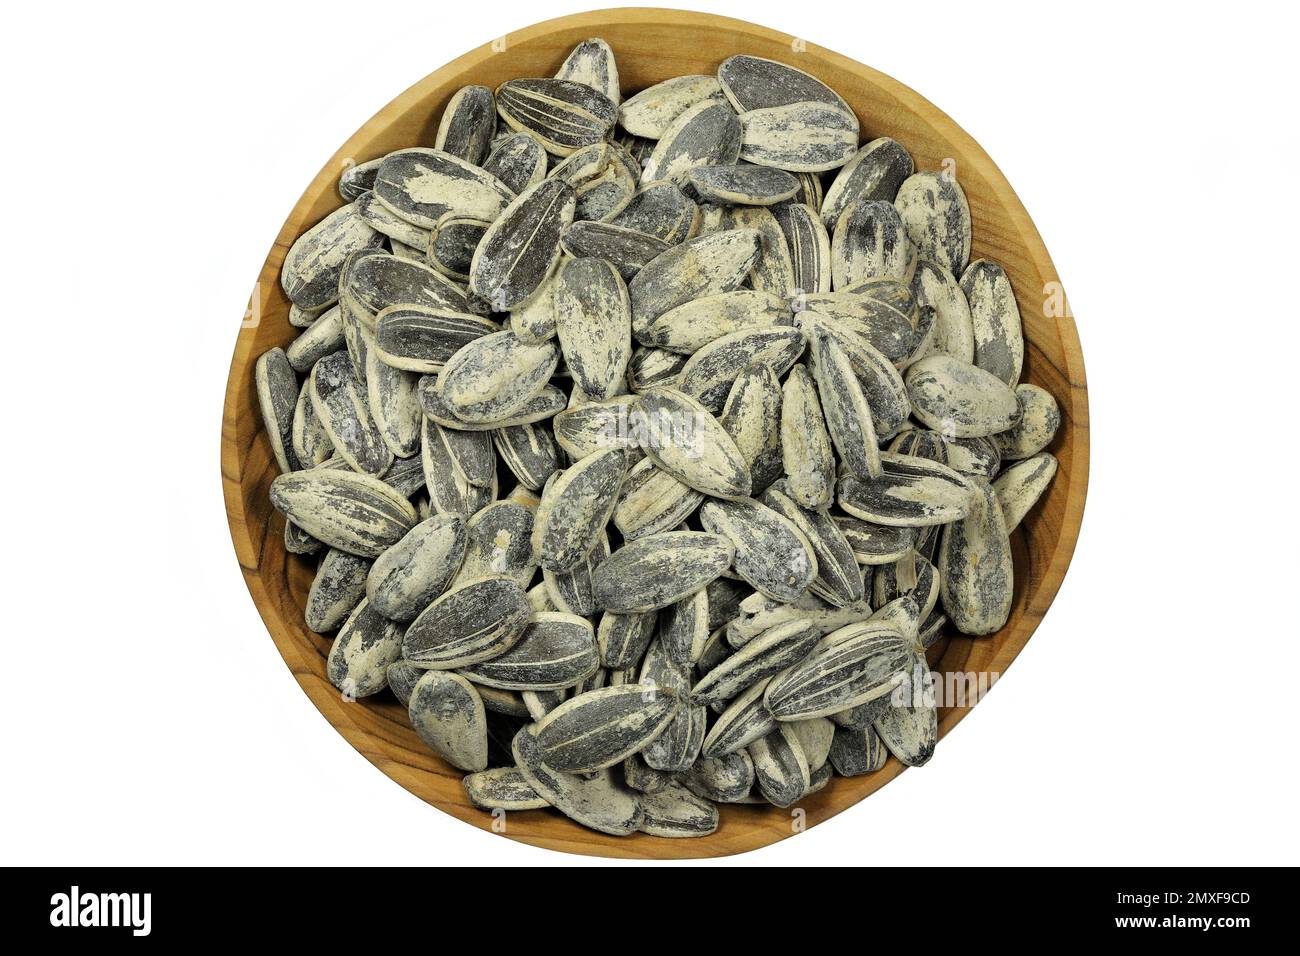 graines de tournesol entières grillées et salées dans un bol en bois d'olive isolé sur fond blanc Banque D'Images